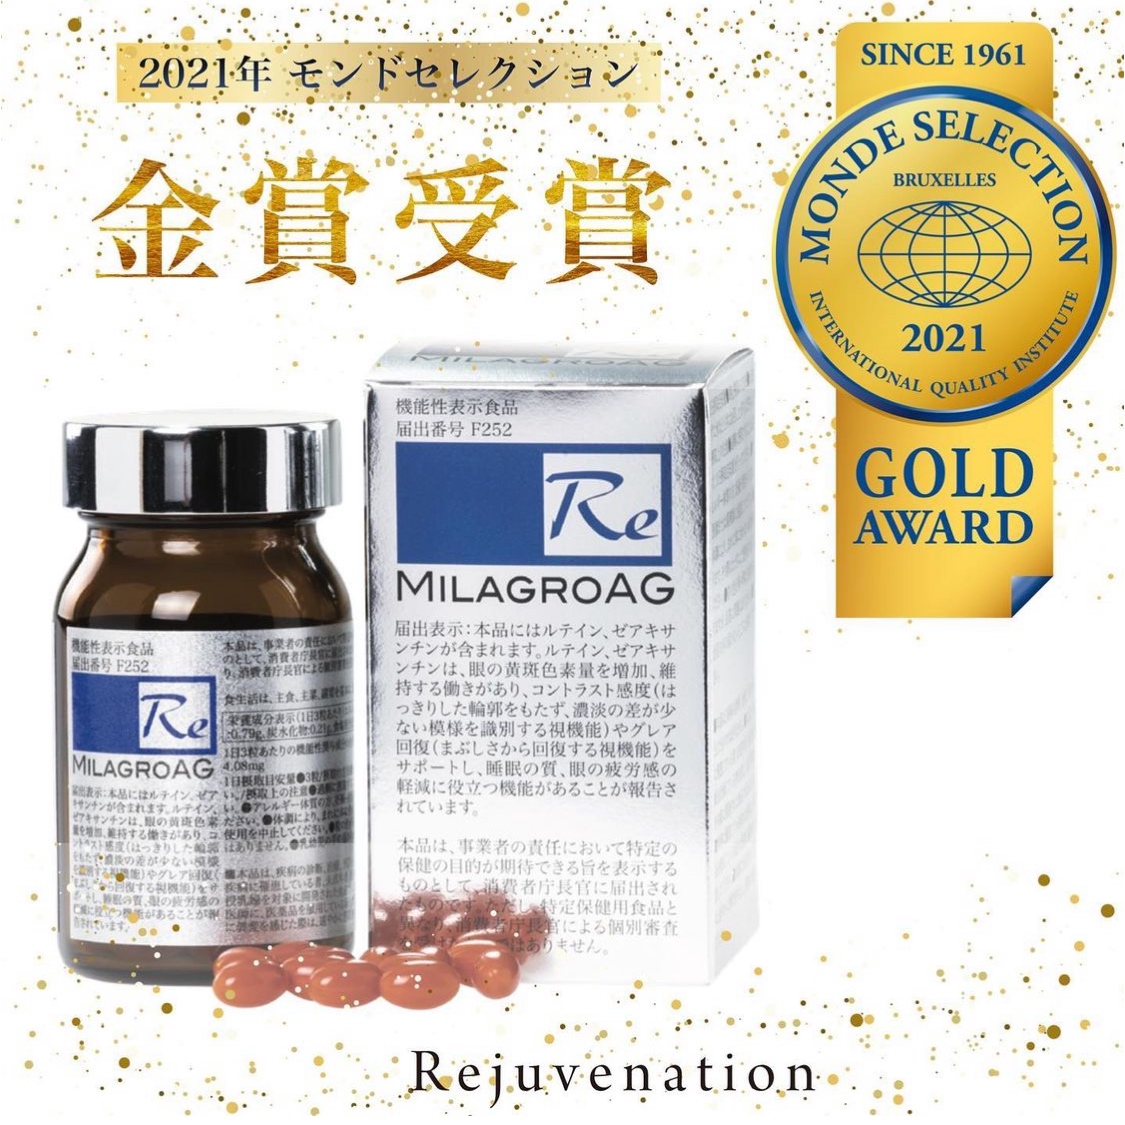 ミラグロAGが【モンドセレクション2021 ダイエット＆ヘルスカテゴリー】で金賞を受賞しました。